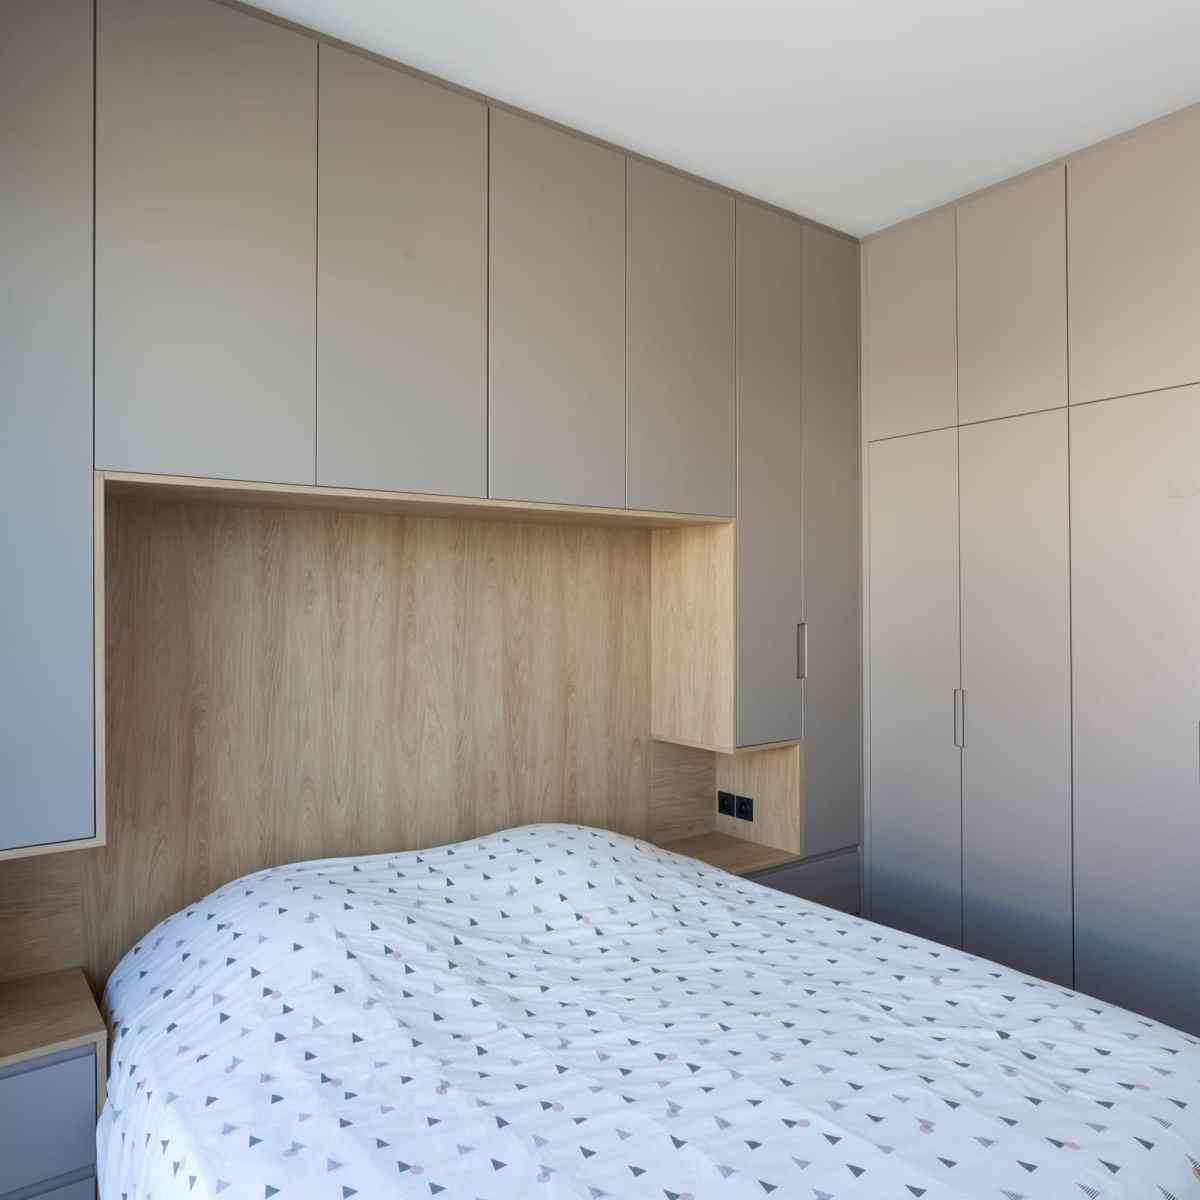 Cette tête de lit sur mesure est intégrée dans la pièce en angle, apportant ainsi 2 espaces chevets et de nombreuses penderies sur mesure